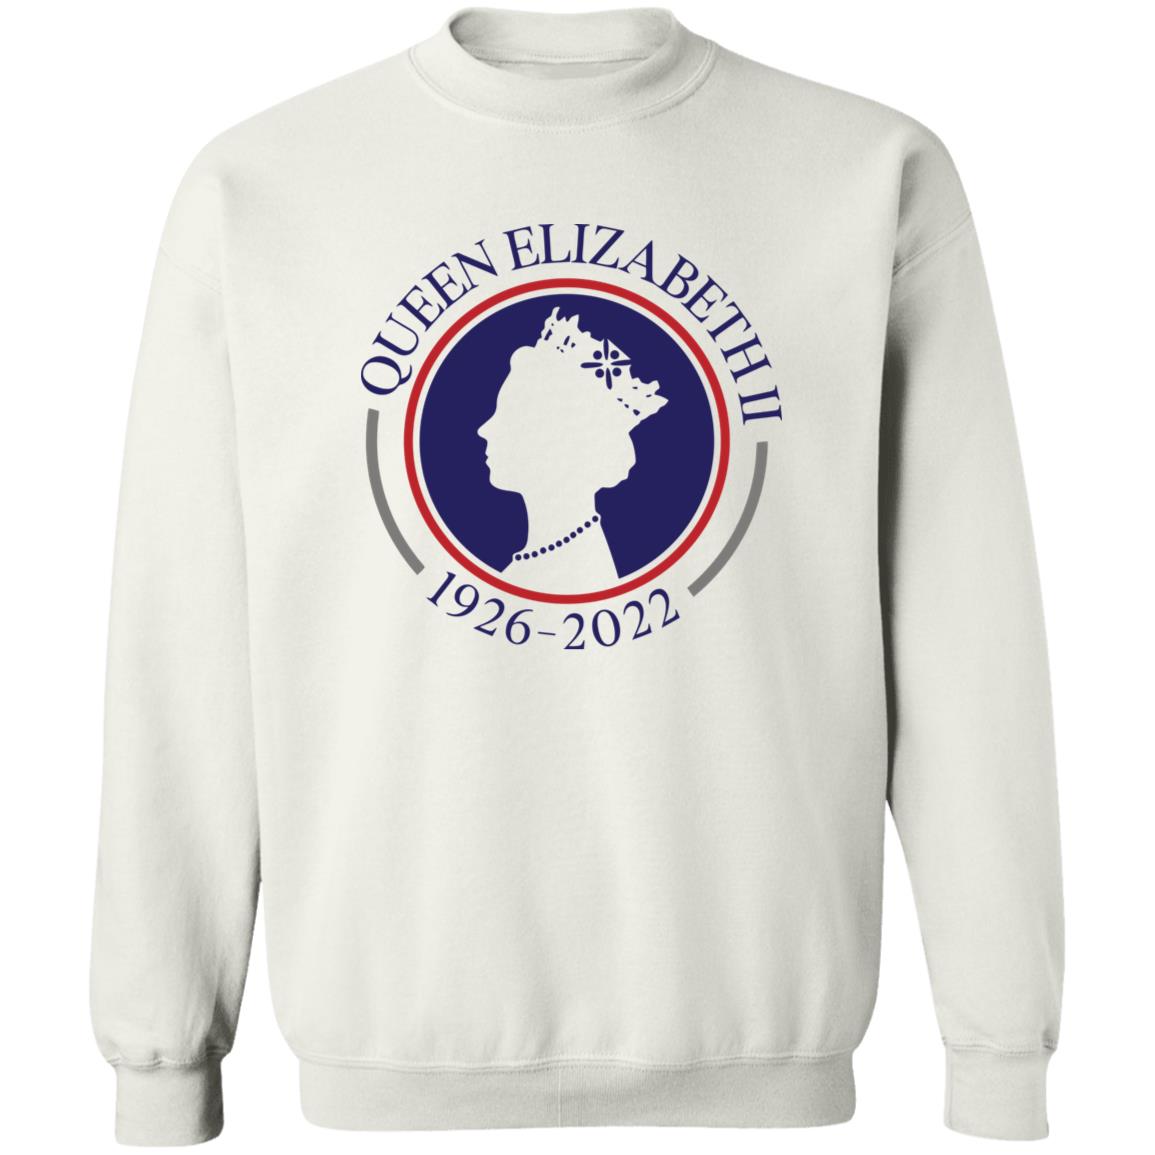 Queen Elizabeth Ii 1926 2022 Shirt 2